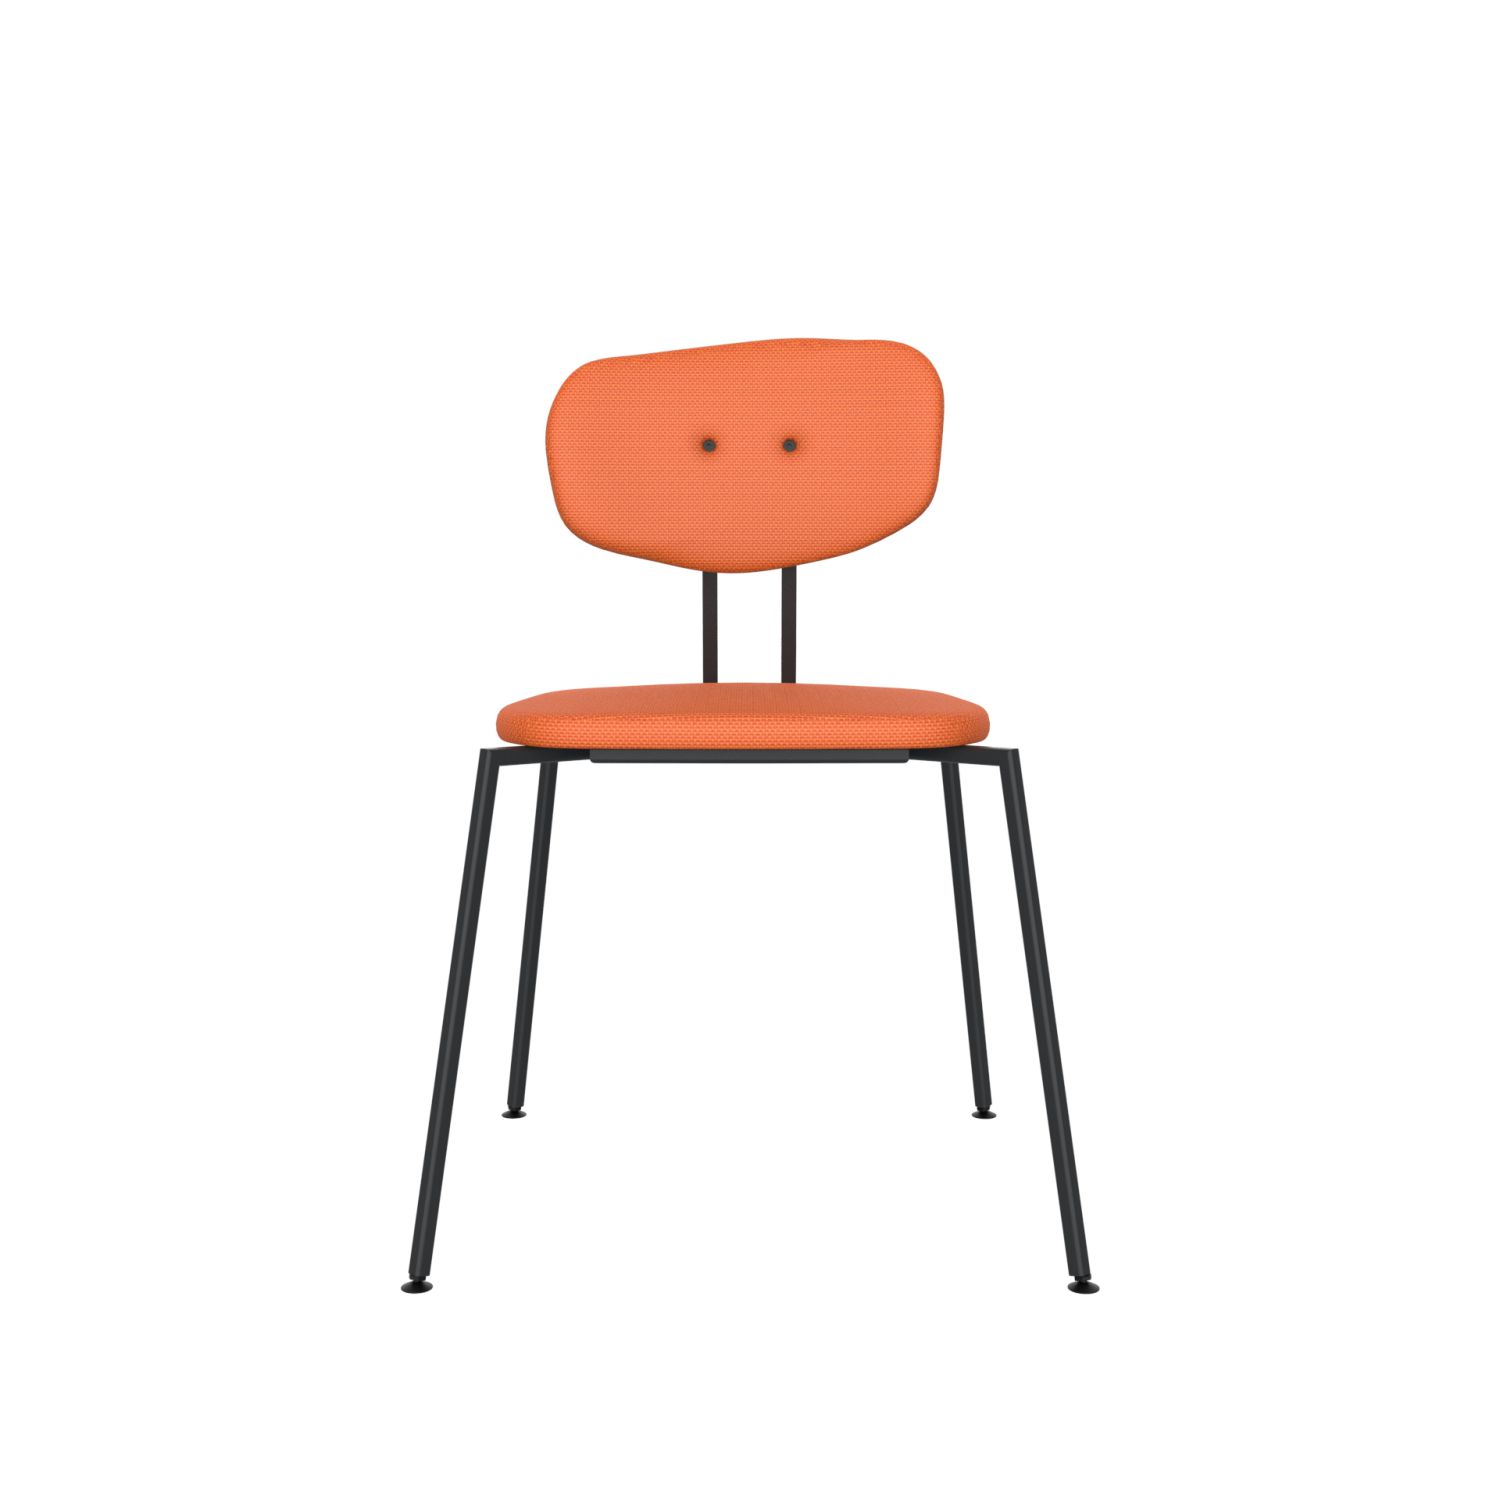 lensvelt maarten baas chair 141 stackable without armrests backrest c burn orange 102 black ral9005 hard leg ends